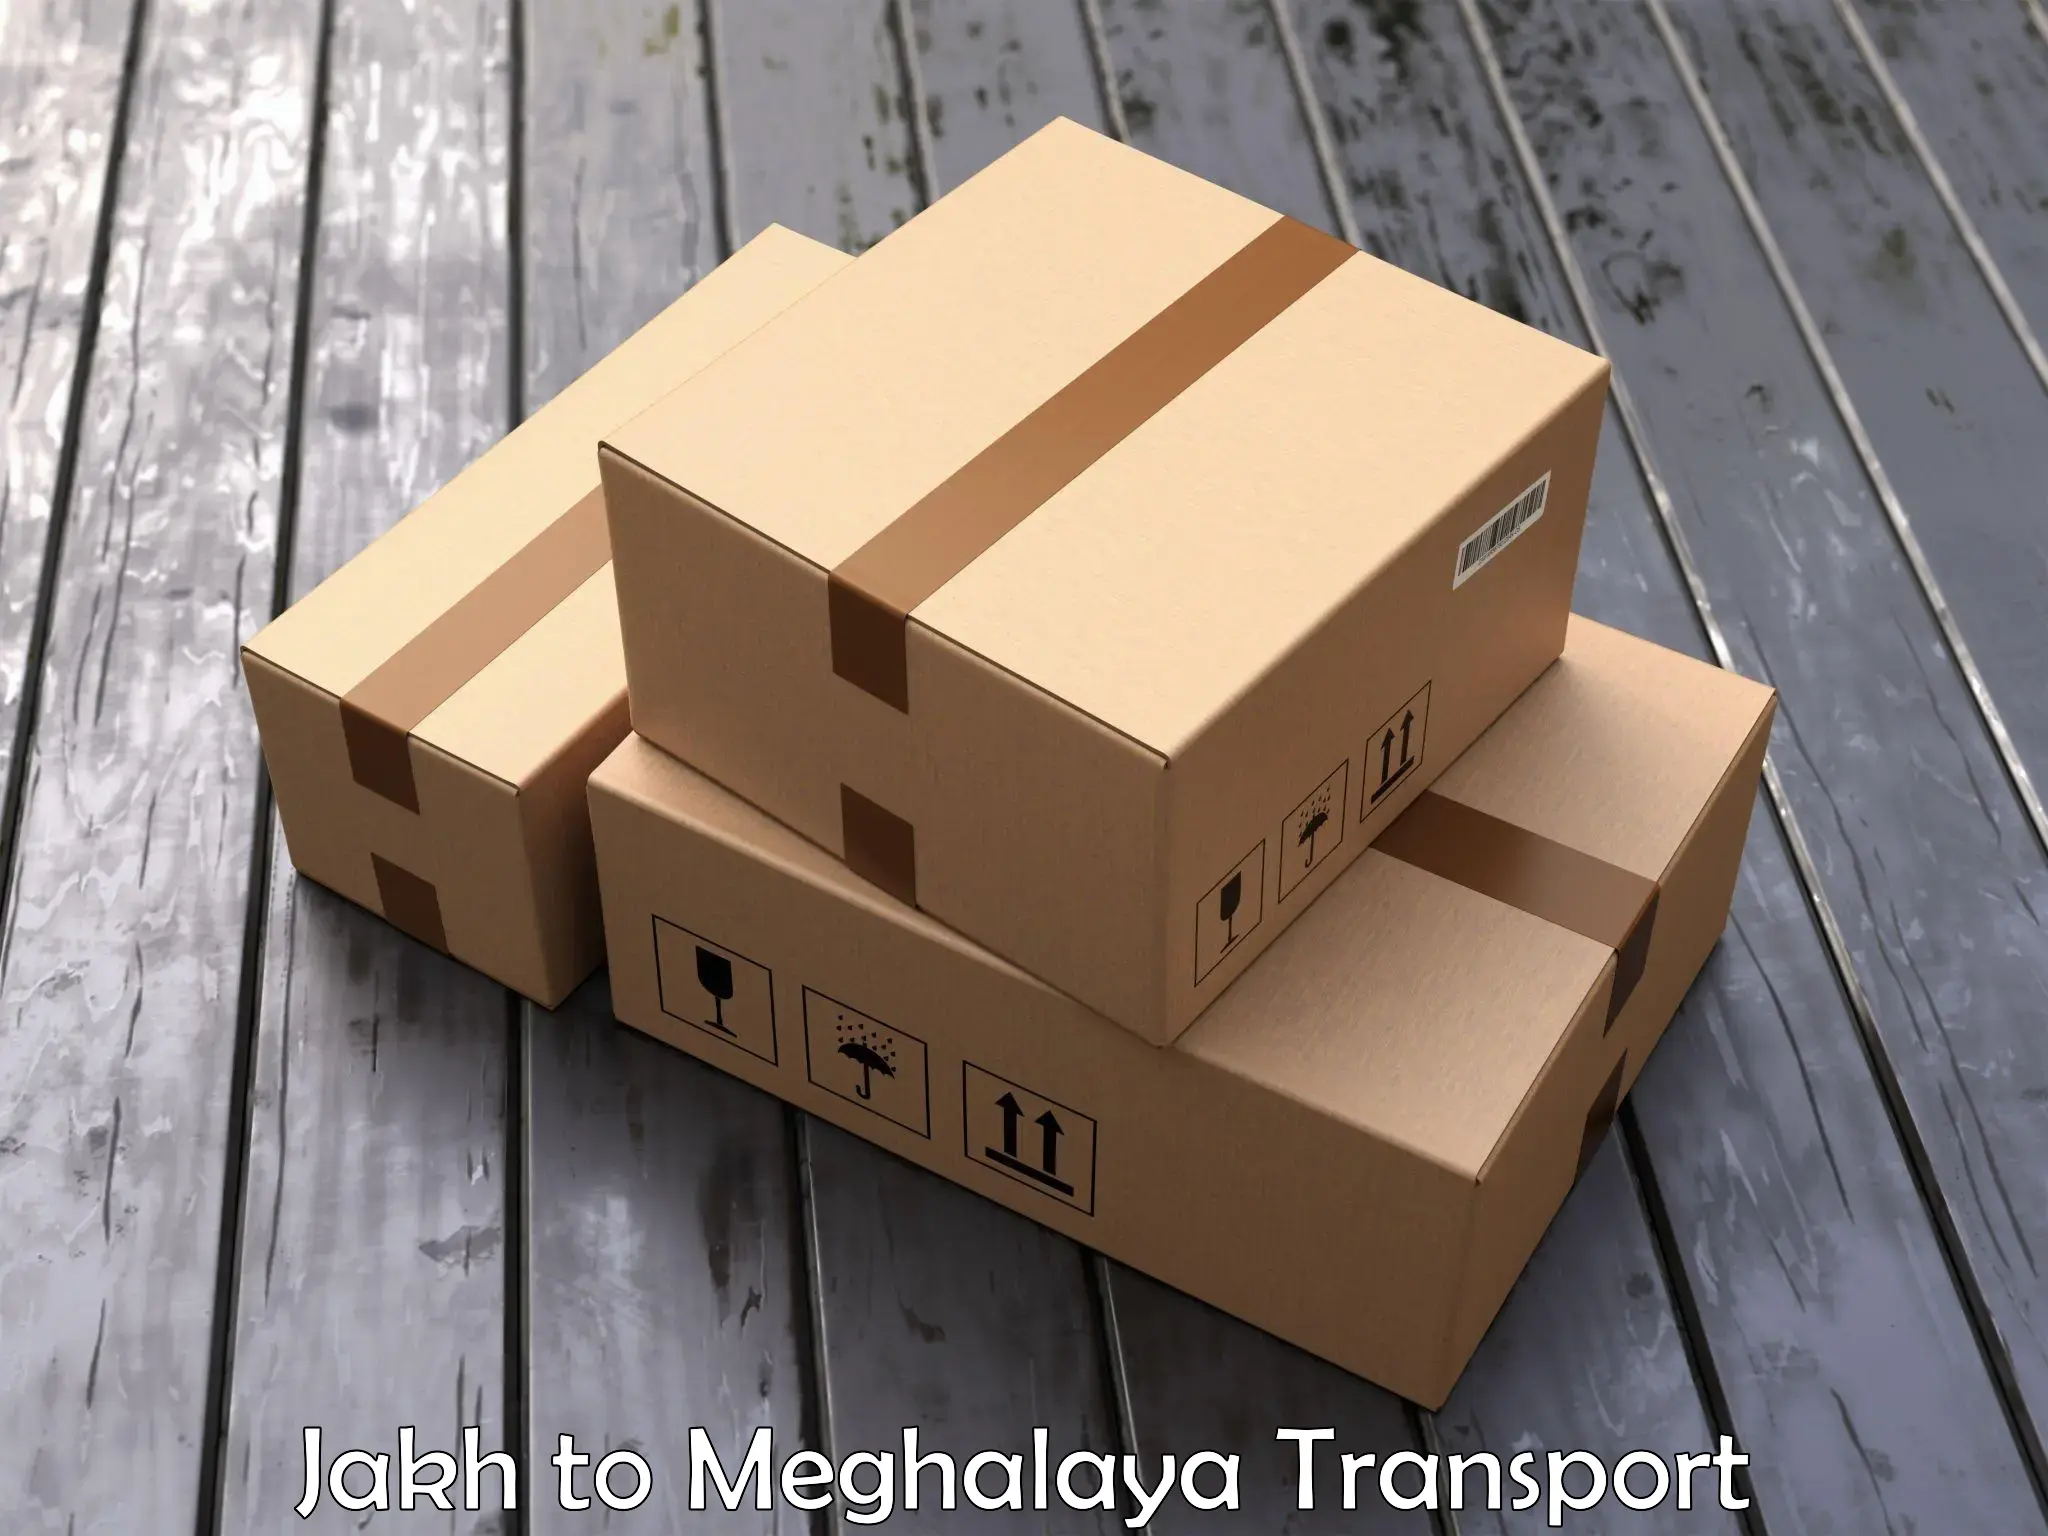 Vehicle parcel service Jakh to Meghalaya